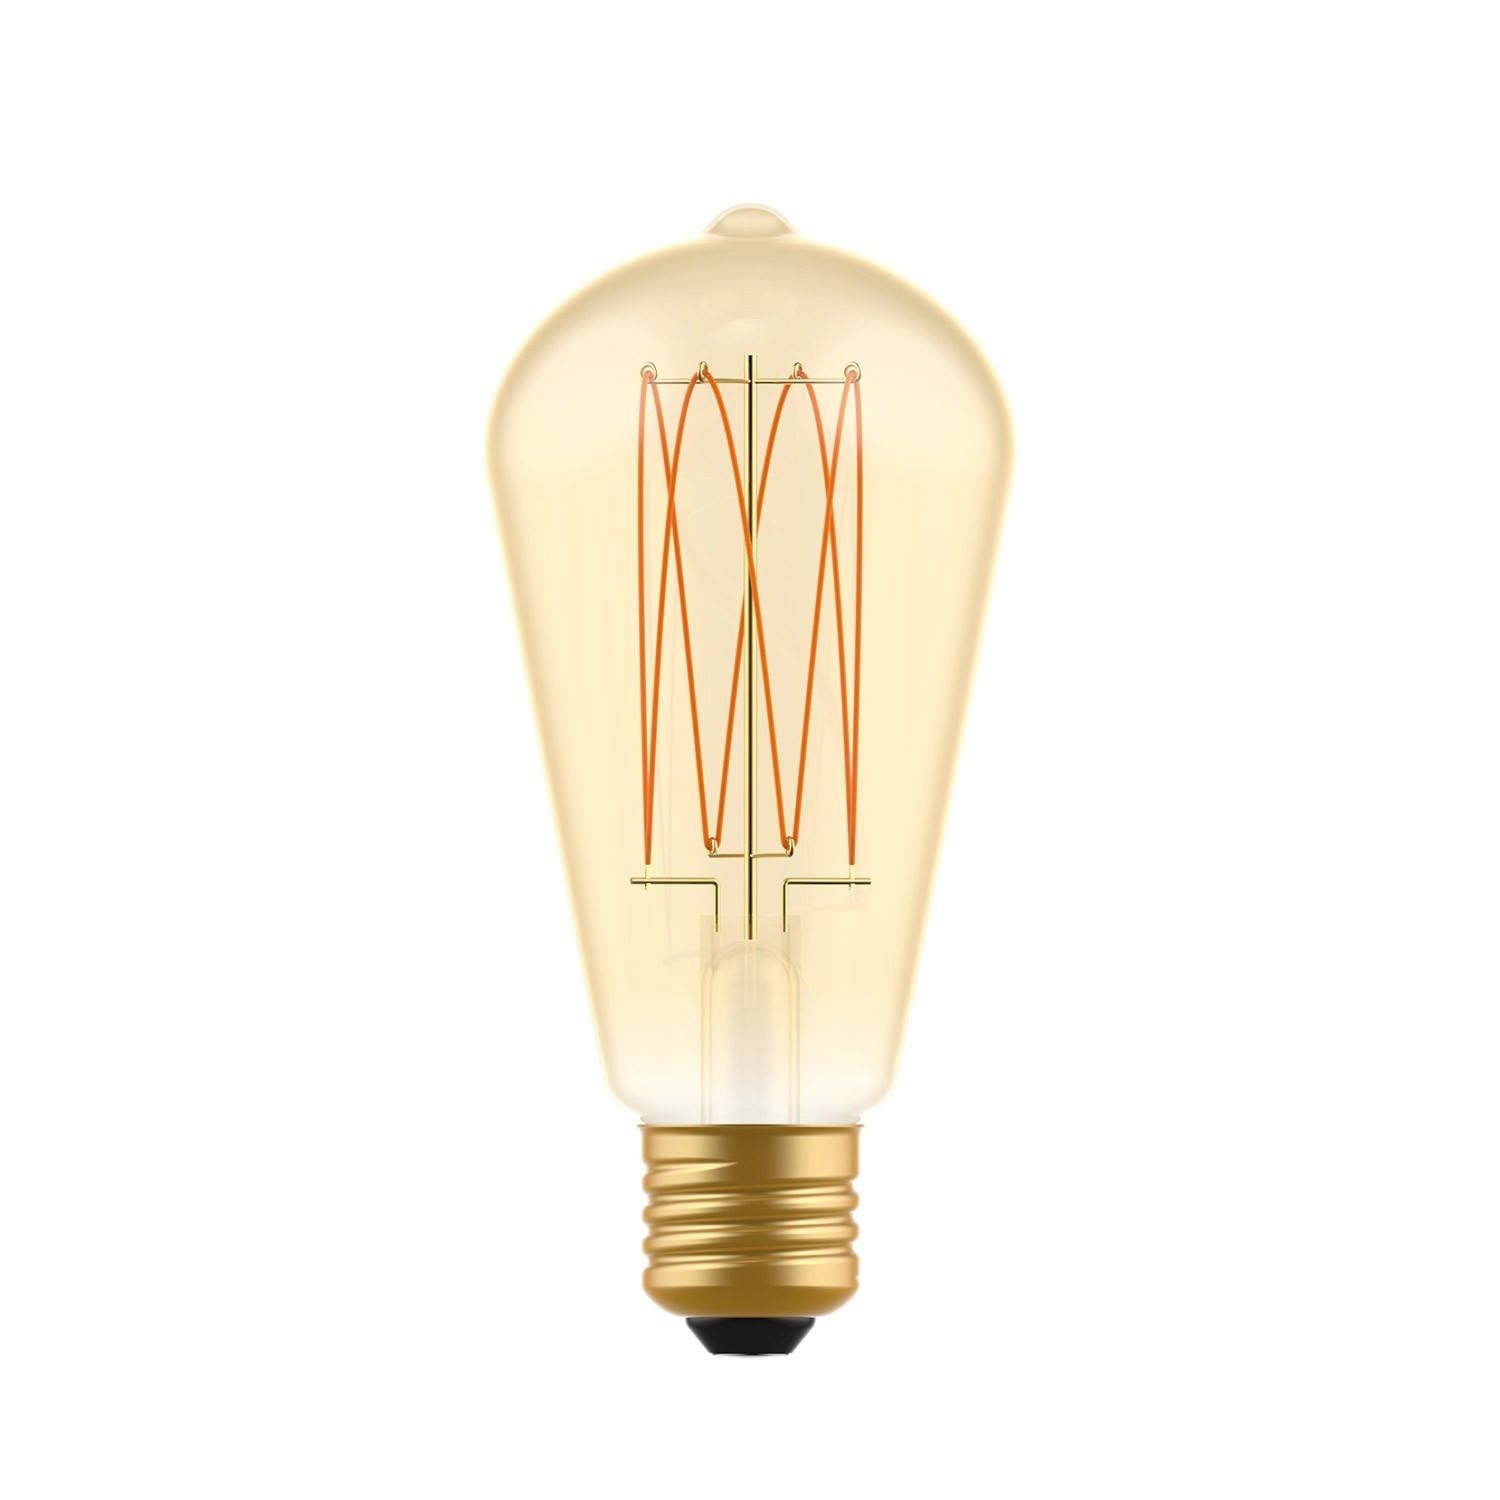 LED žarulja zlatne boje C54 Carbon Linije s ravnim nitima Edison ST64 7W E27 Dimabilna 2700K